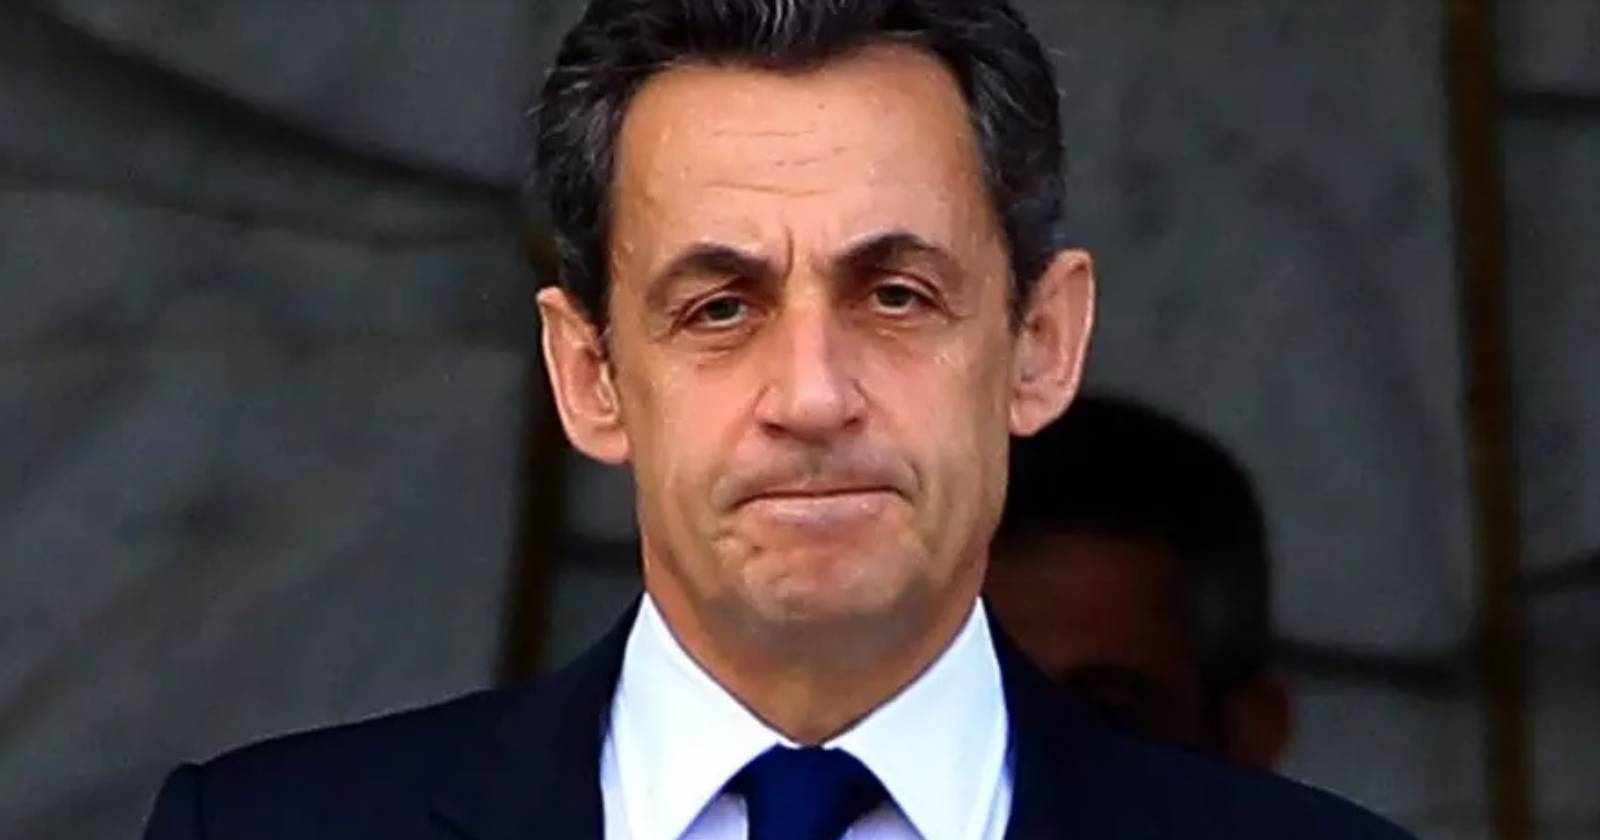 Nicolás Sarkozy es imputado